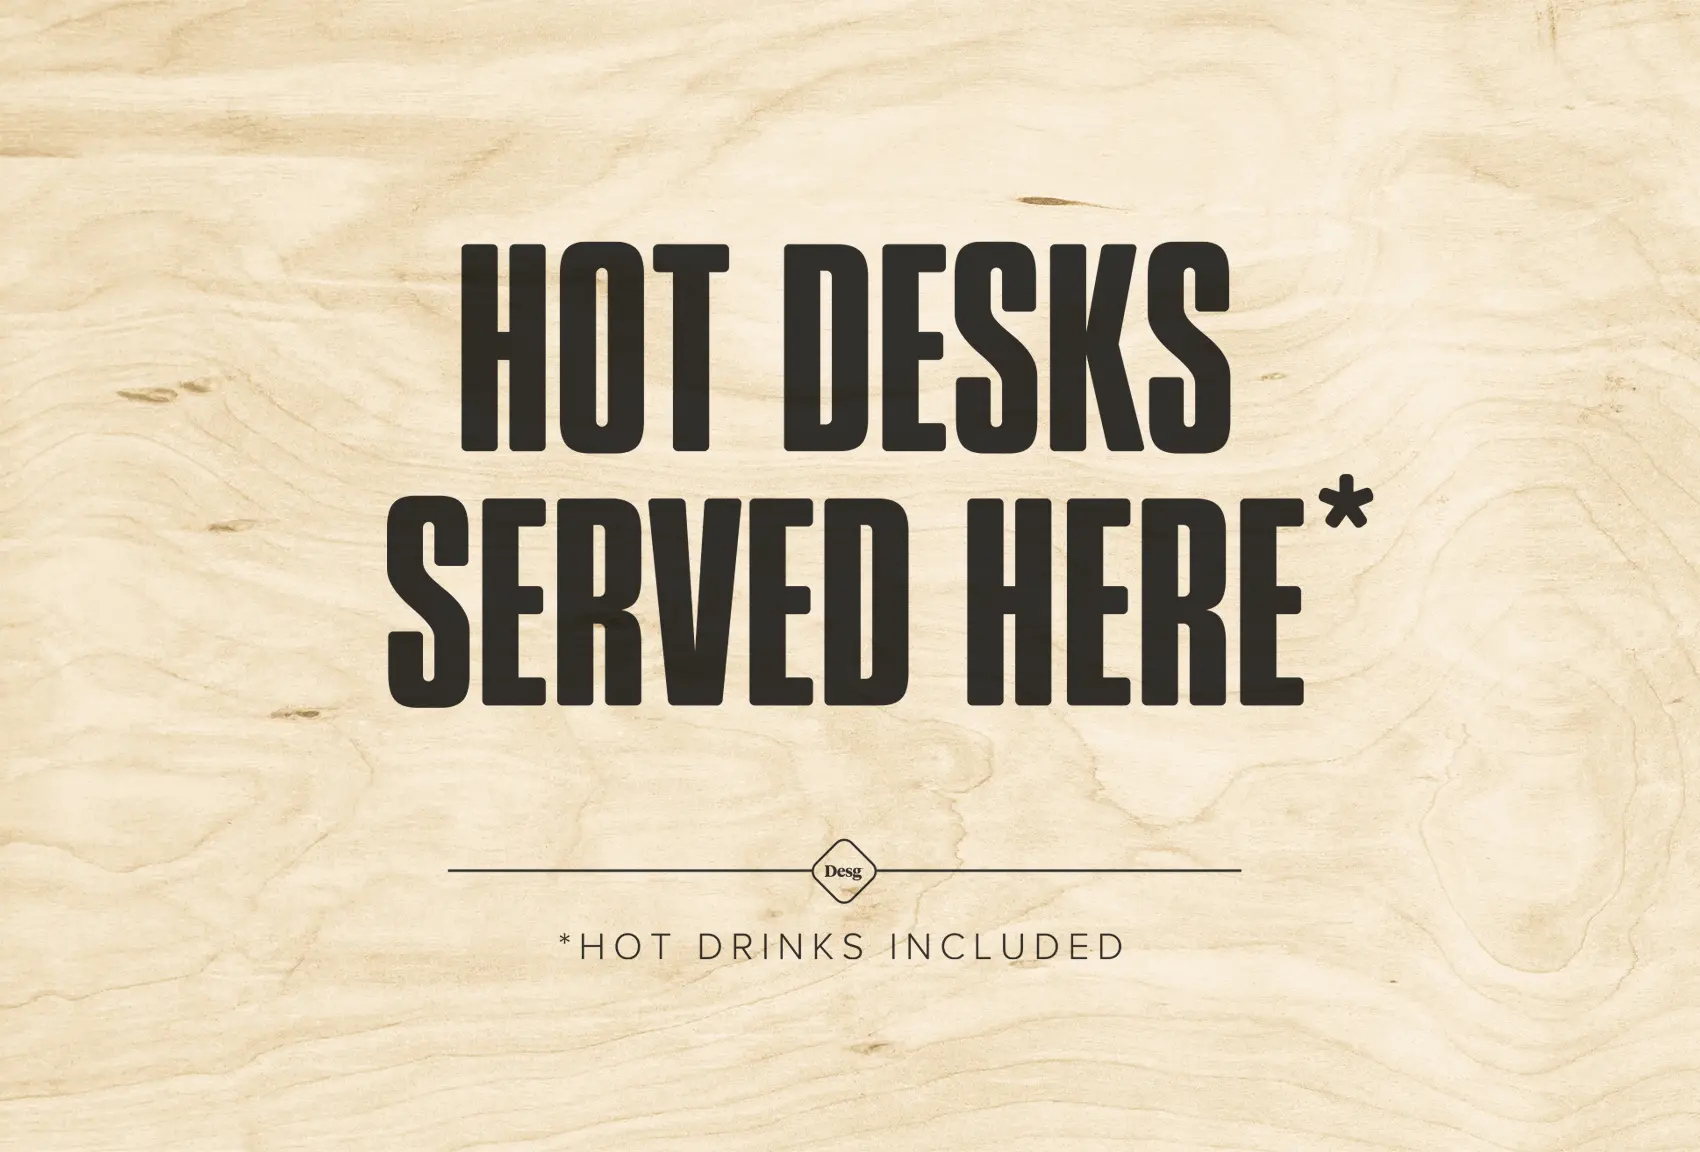 Hot desks served here* hot drinks included